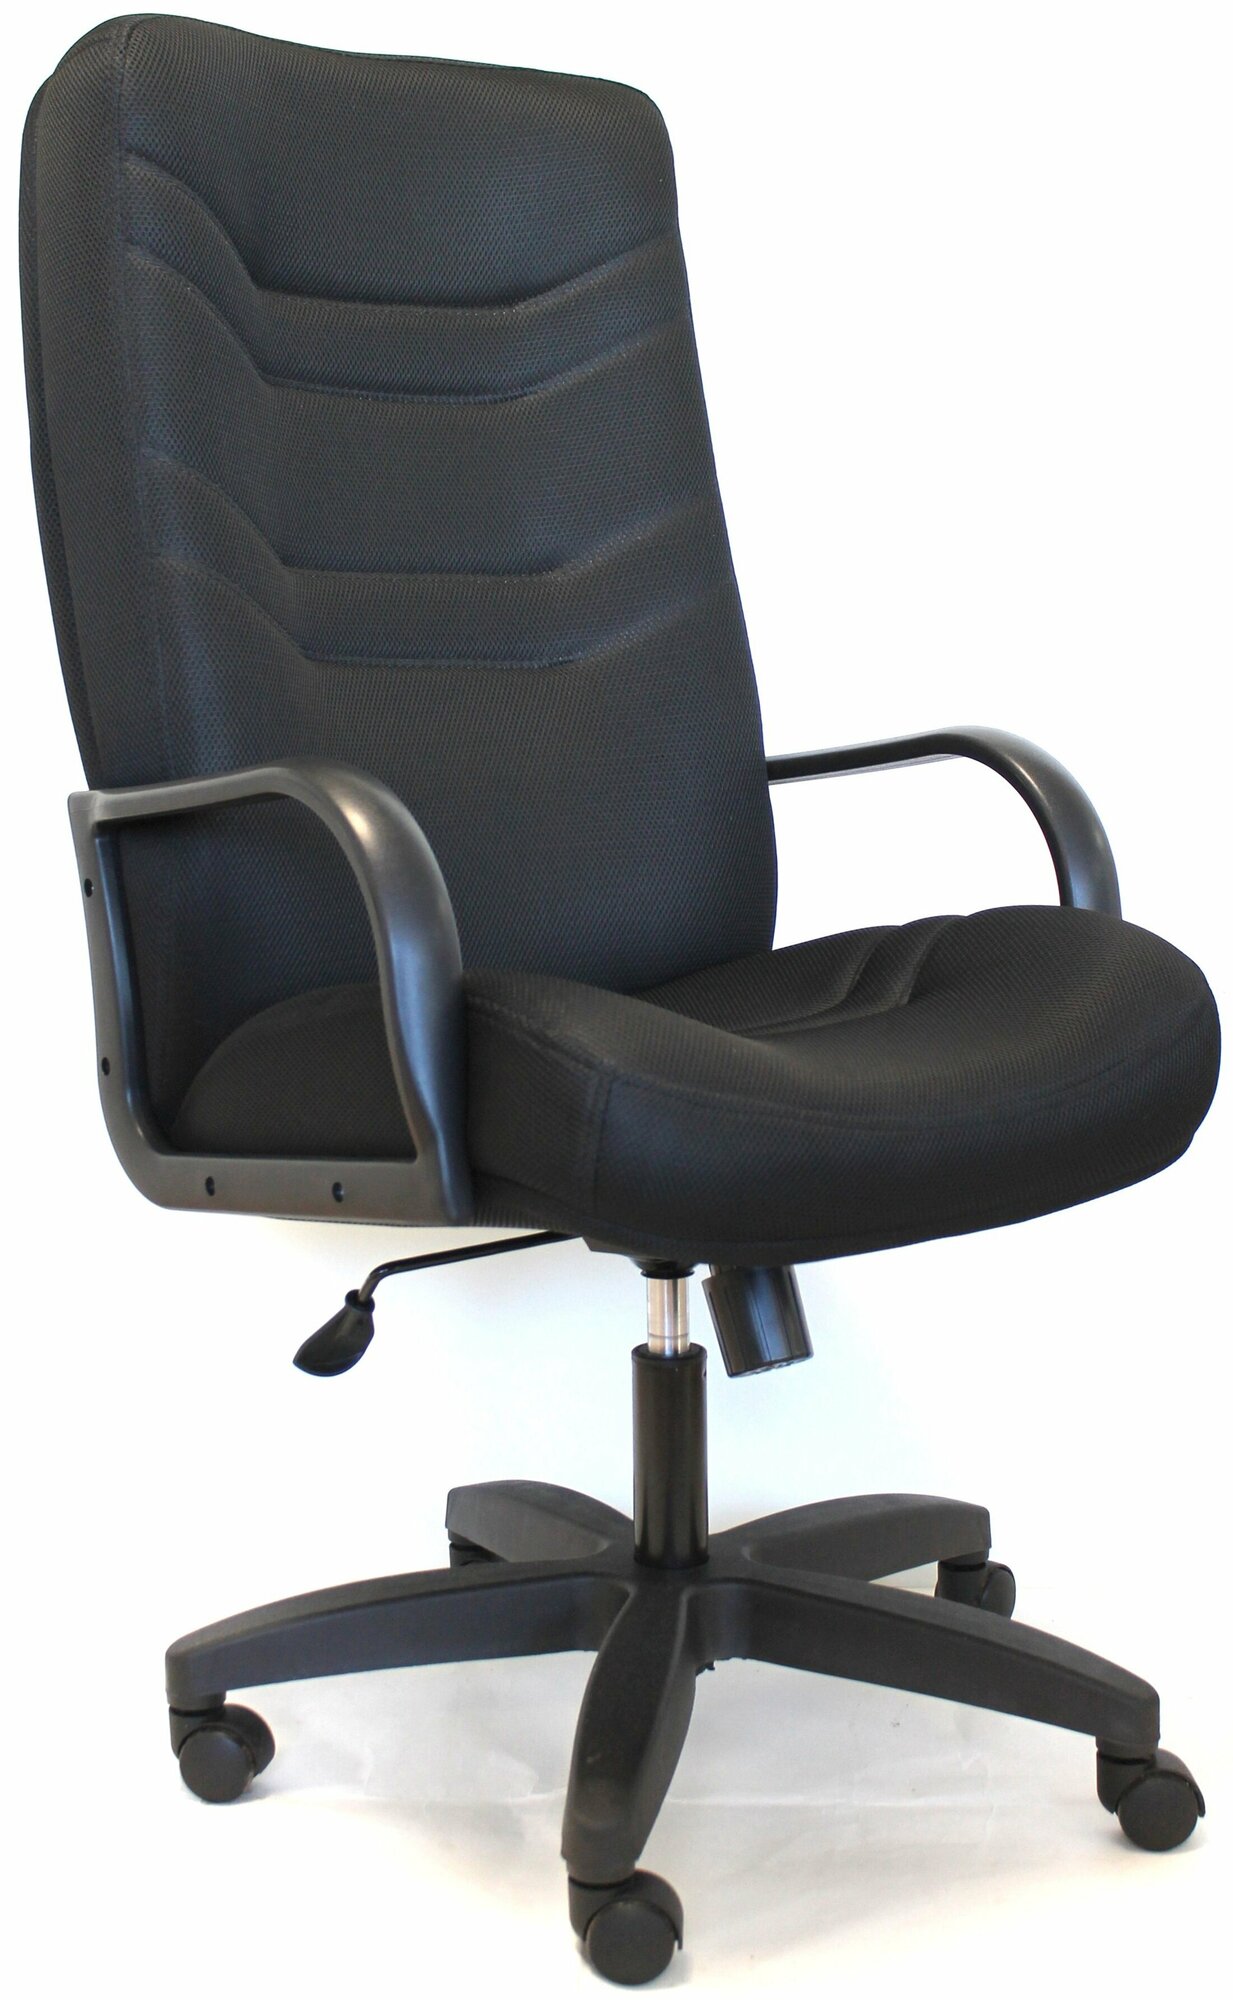 Компьютерное кресло Евростиль Министр Стандарт офисное обивка ткань/сетка цвет чёрный